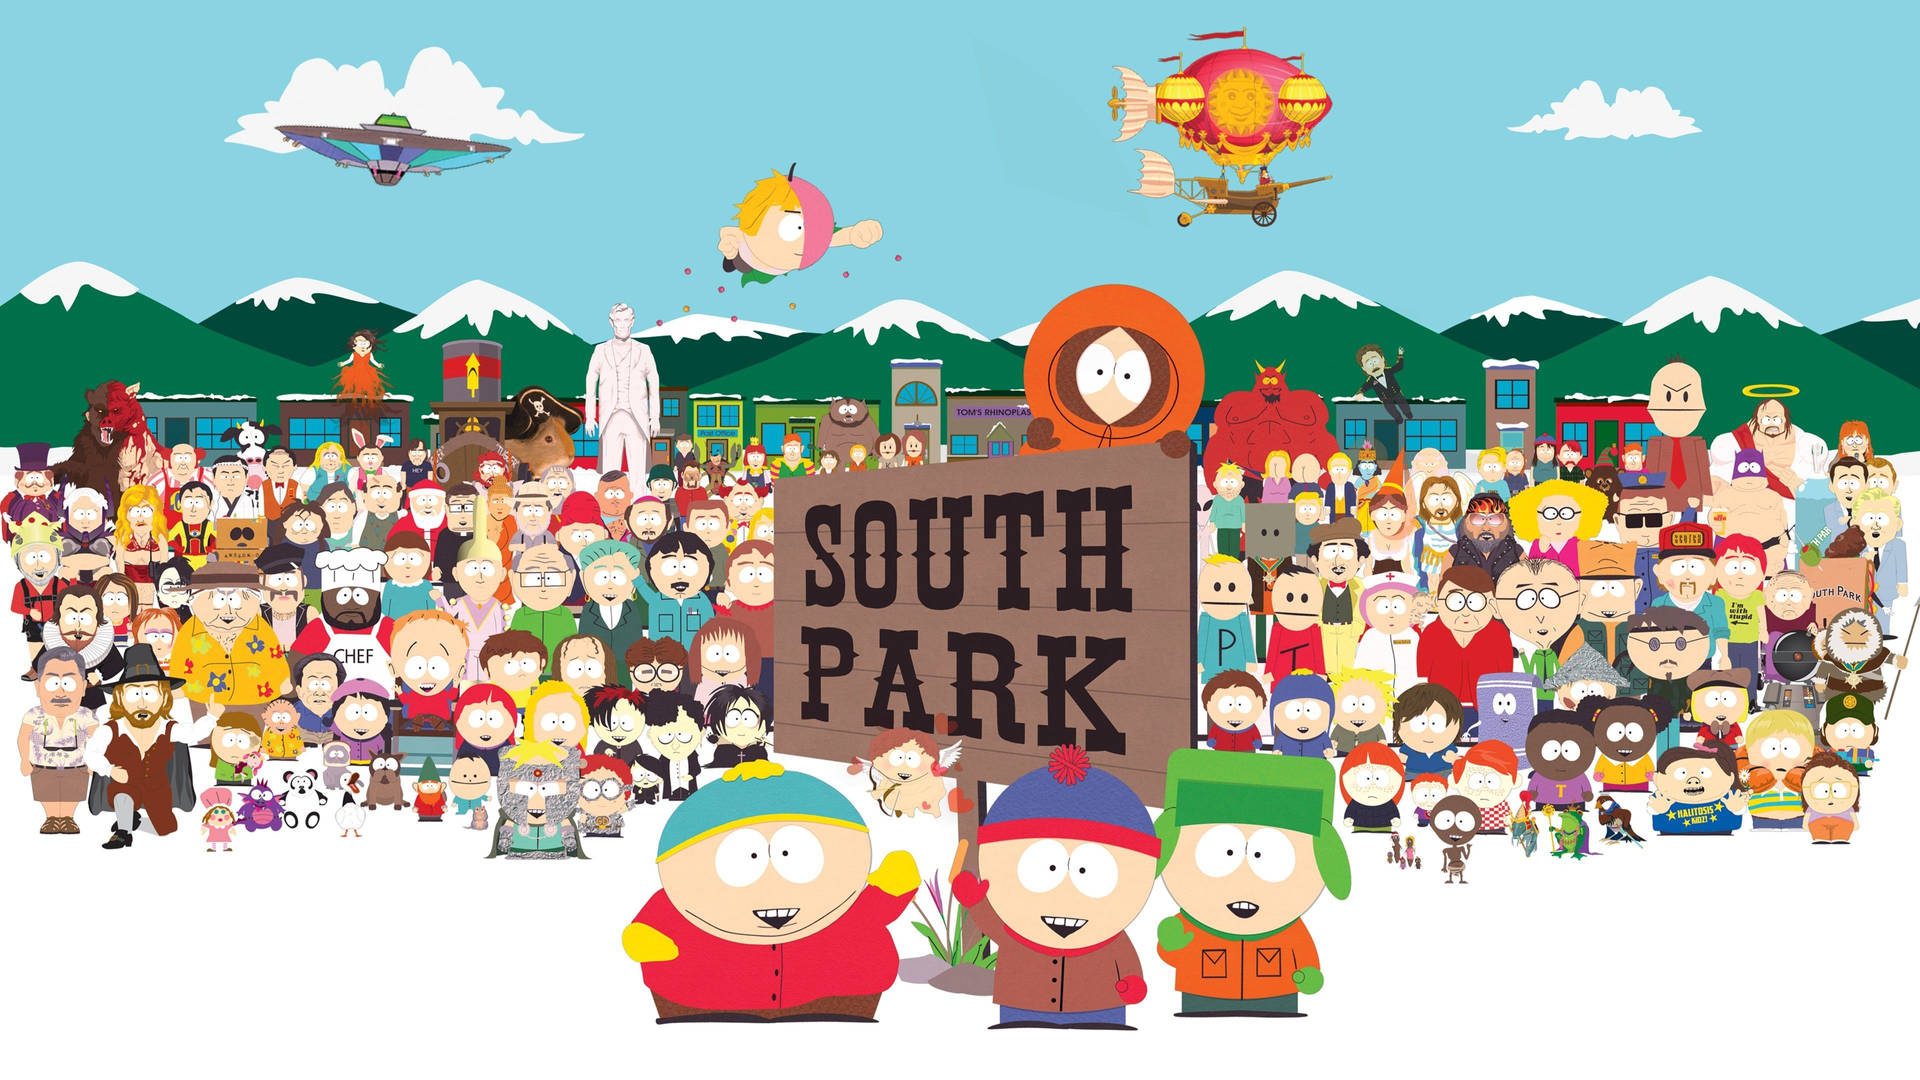 South Park Get Together Background